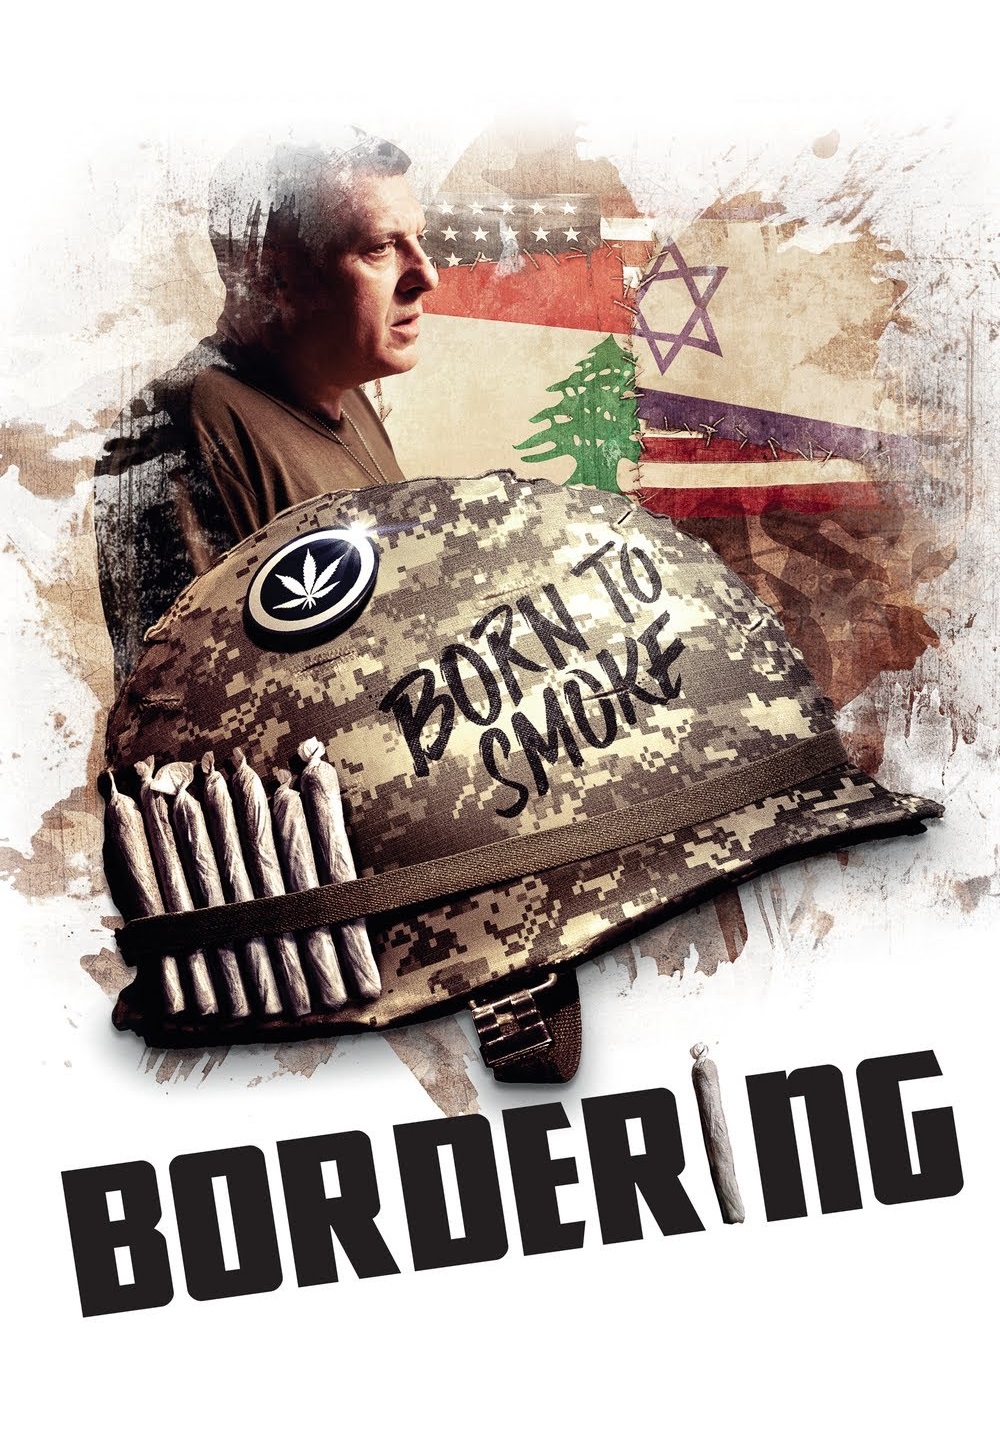 Bordering (2014)